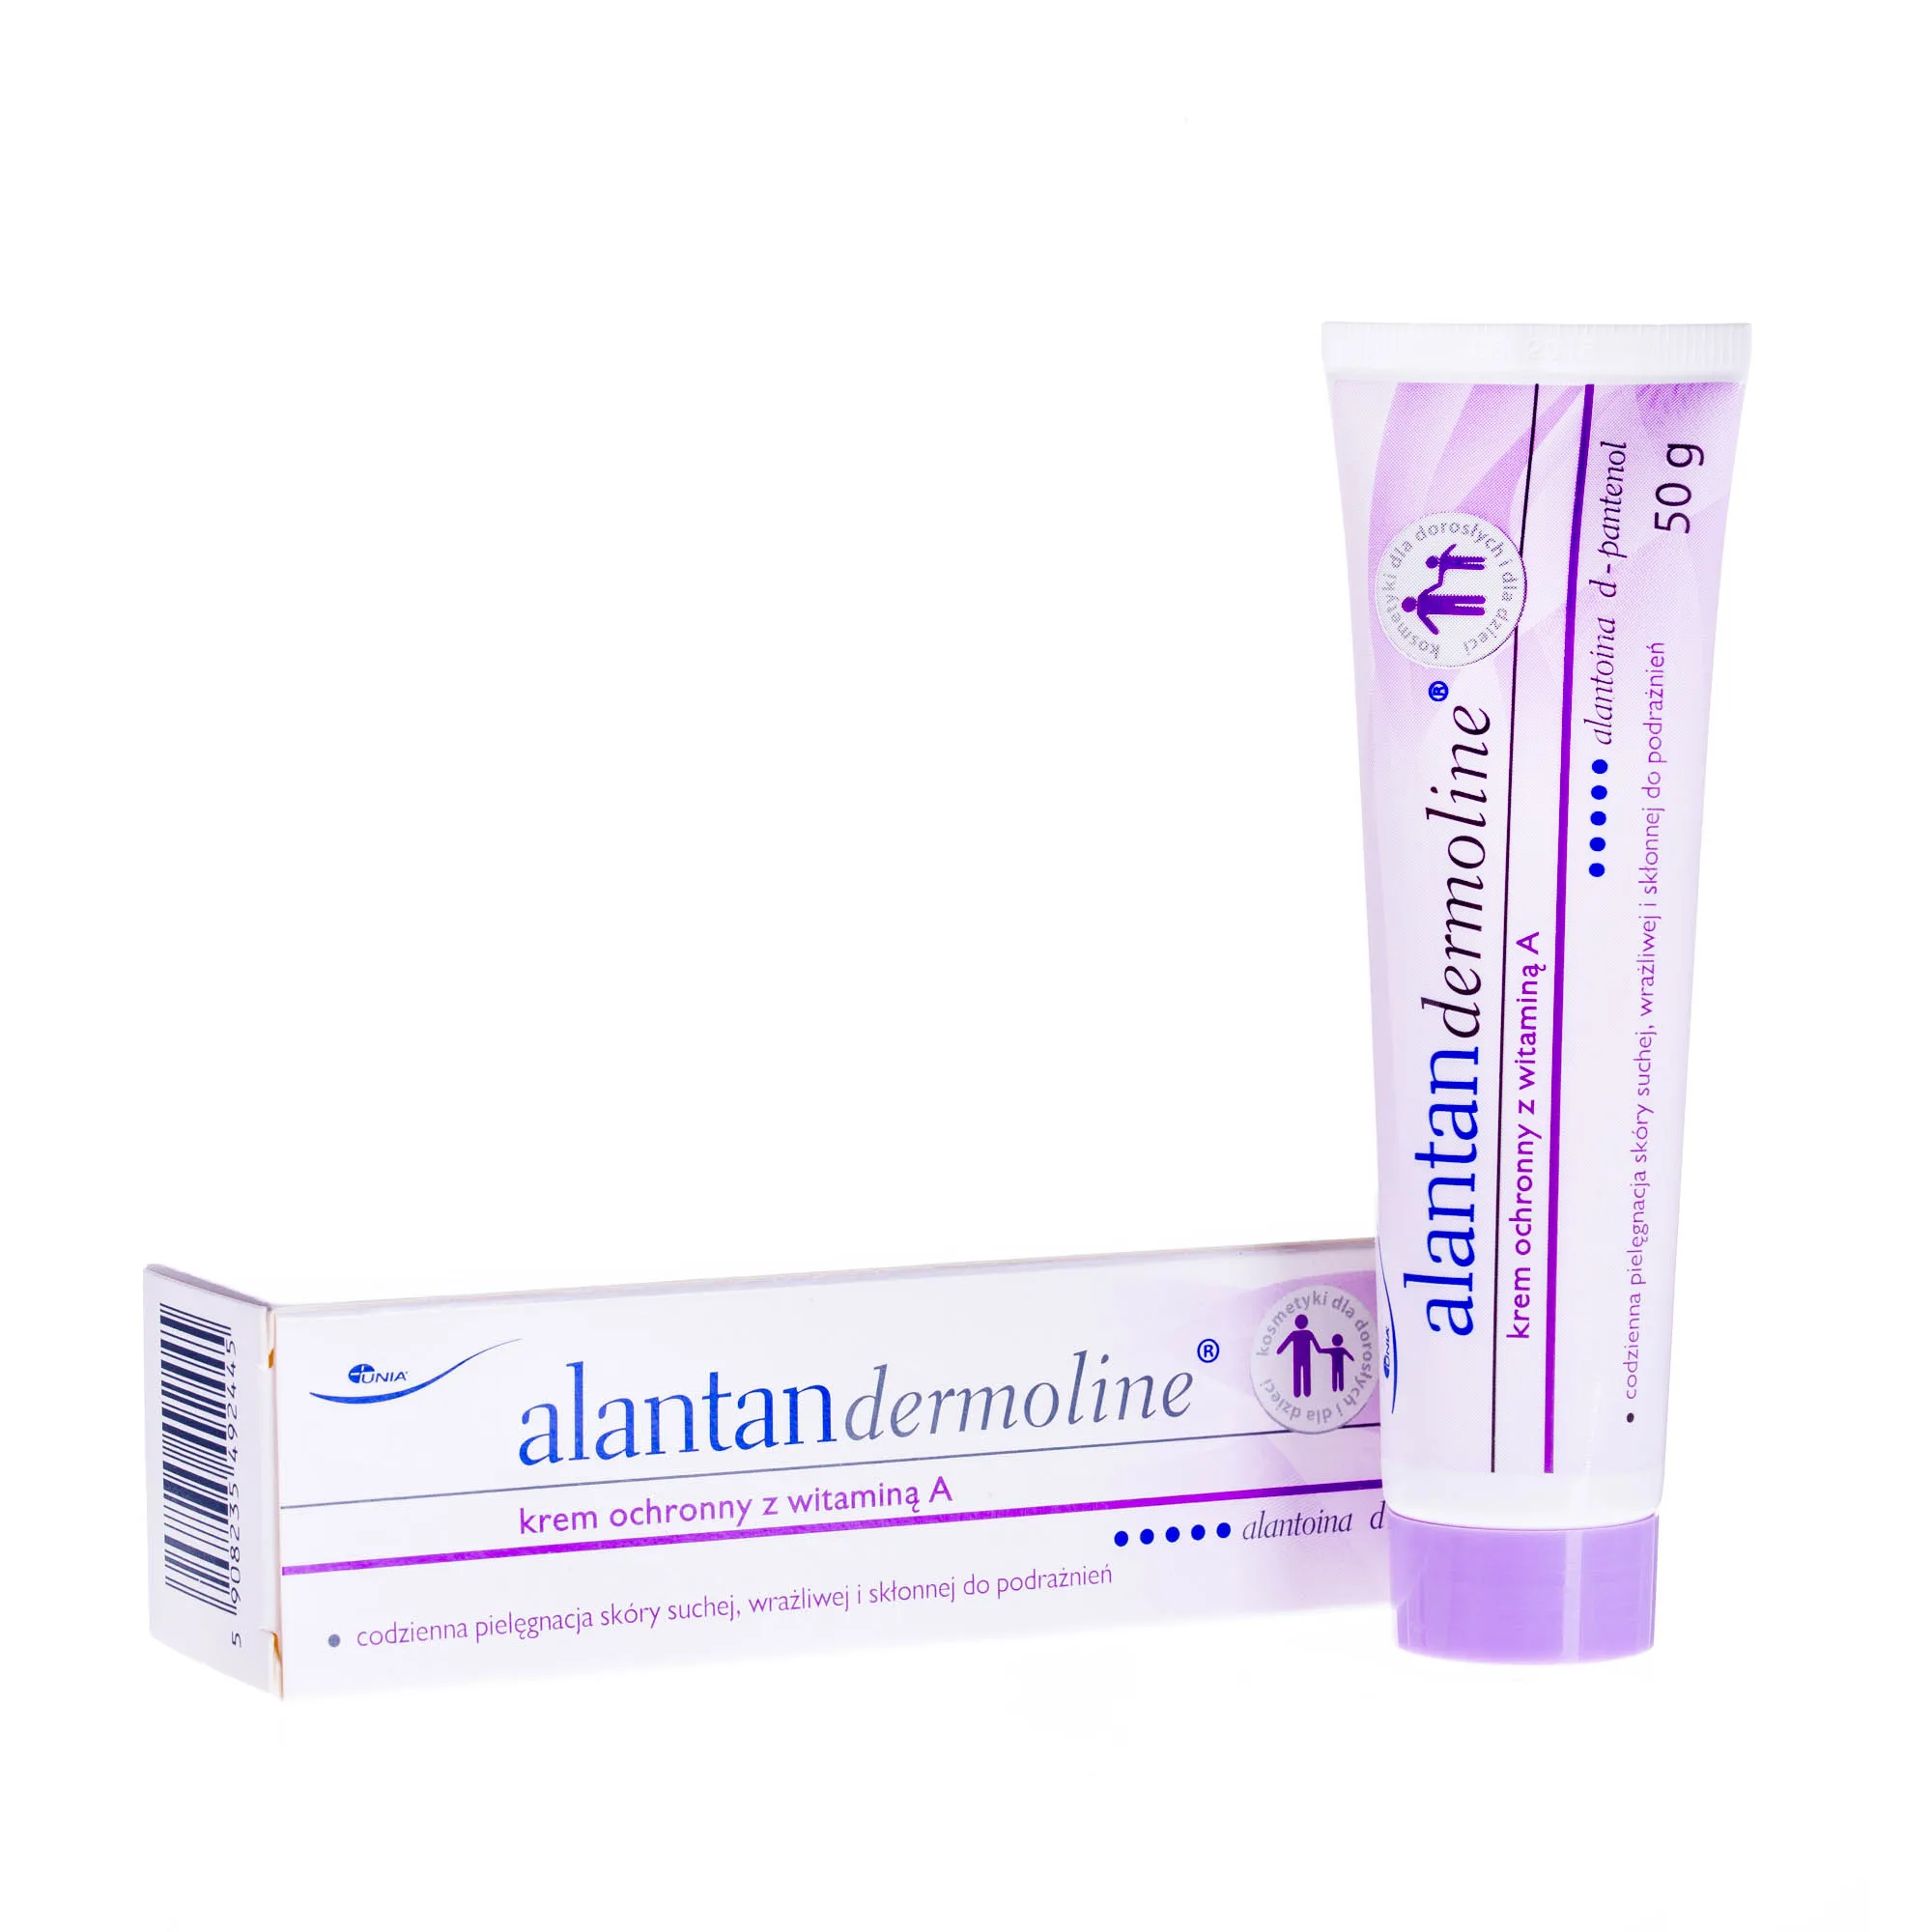 Alantandermoline - krem ochronny z witaminą A do codziennej pielęgnacji, 50 g